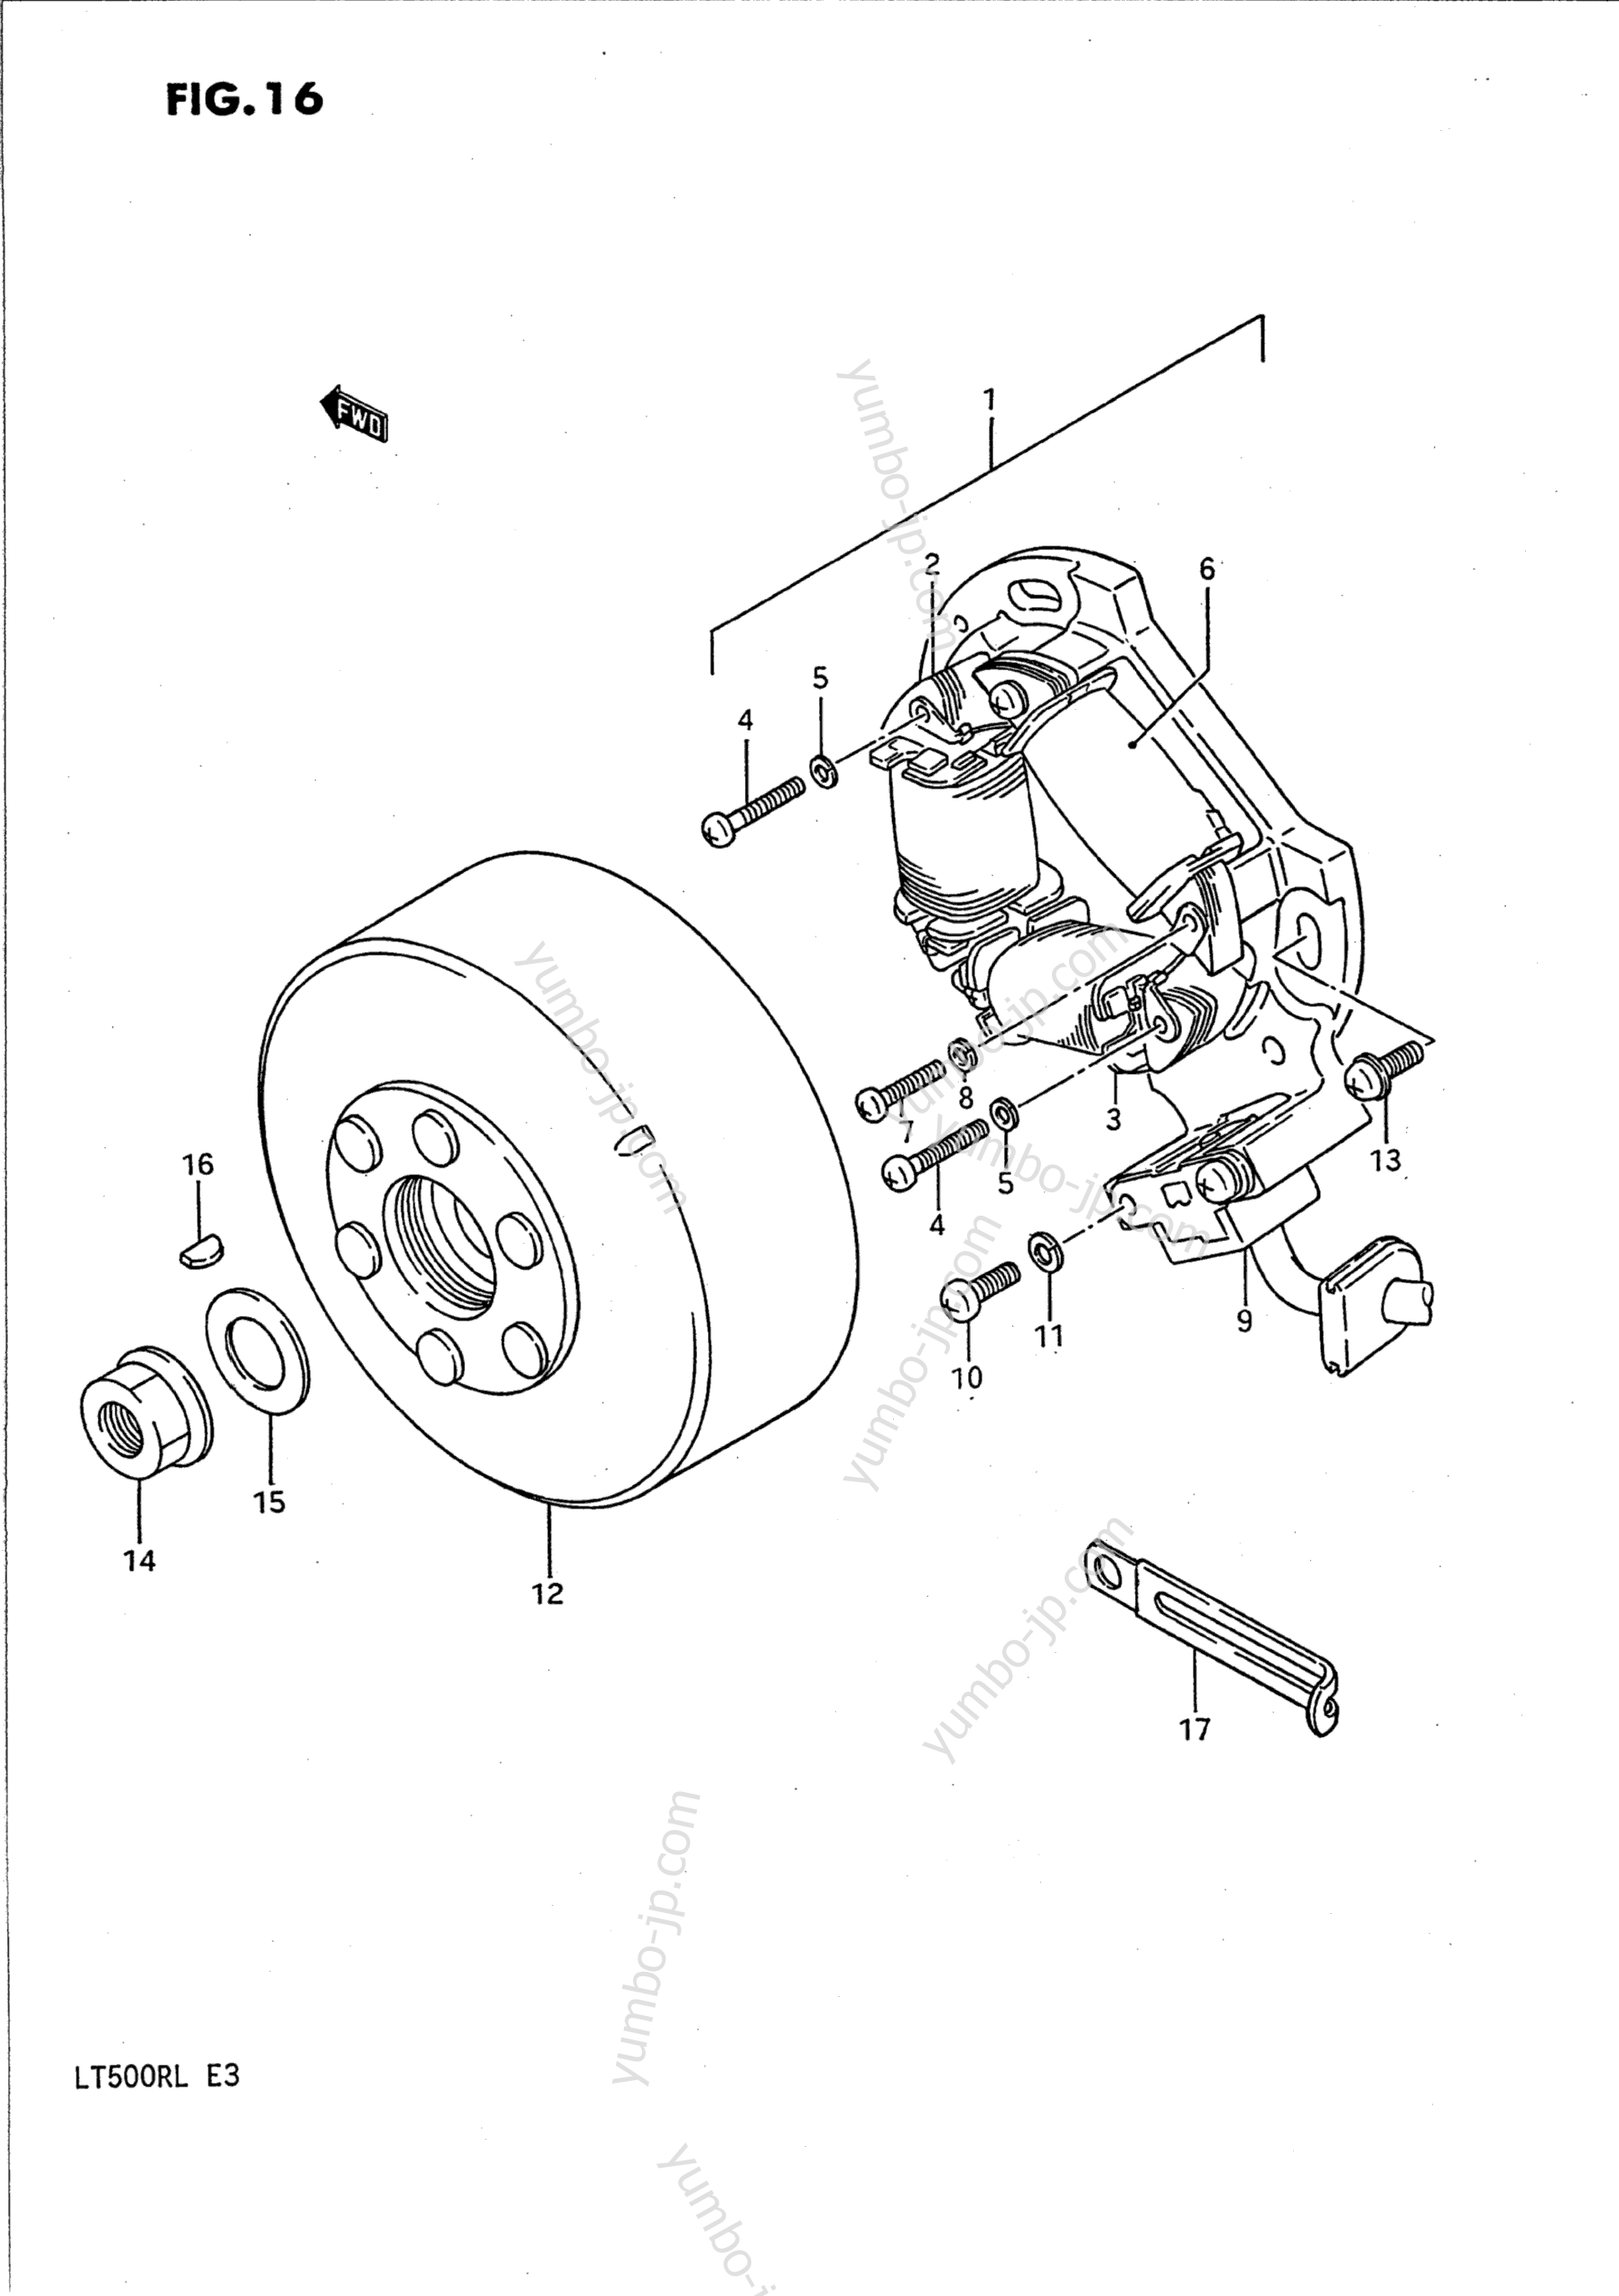 MAGNETO for ATVs SUZUKI QuadRacer (LT500R) 1987 year